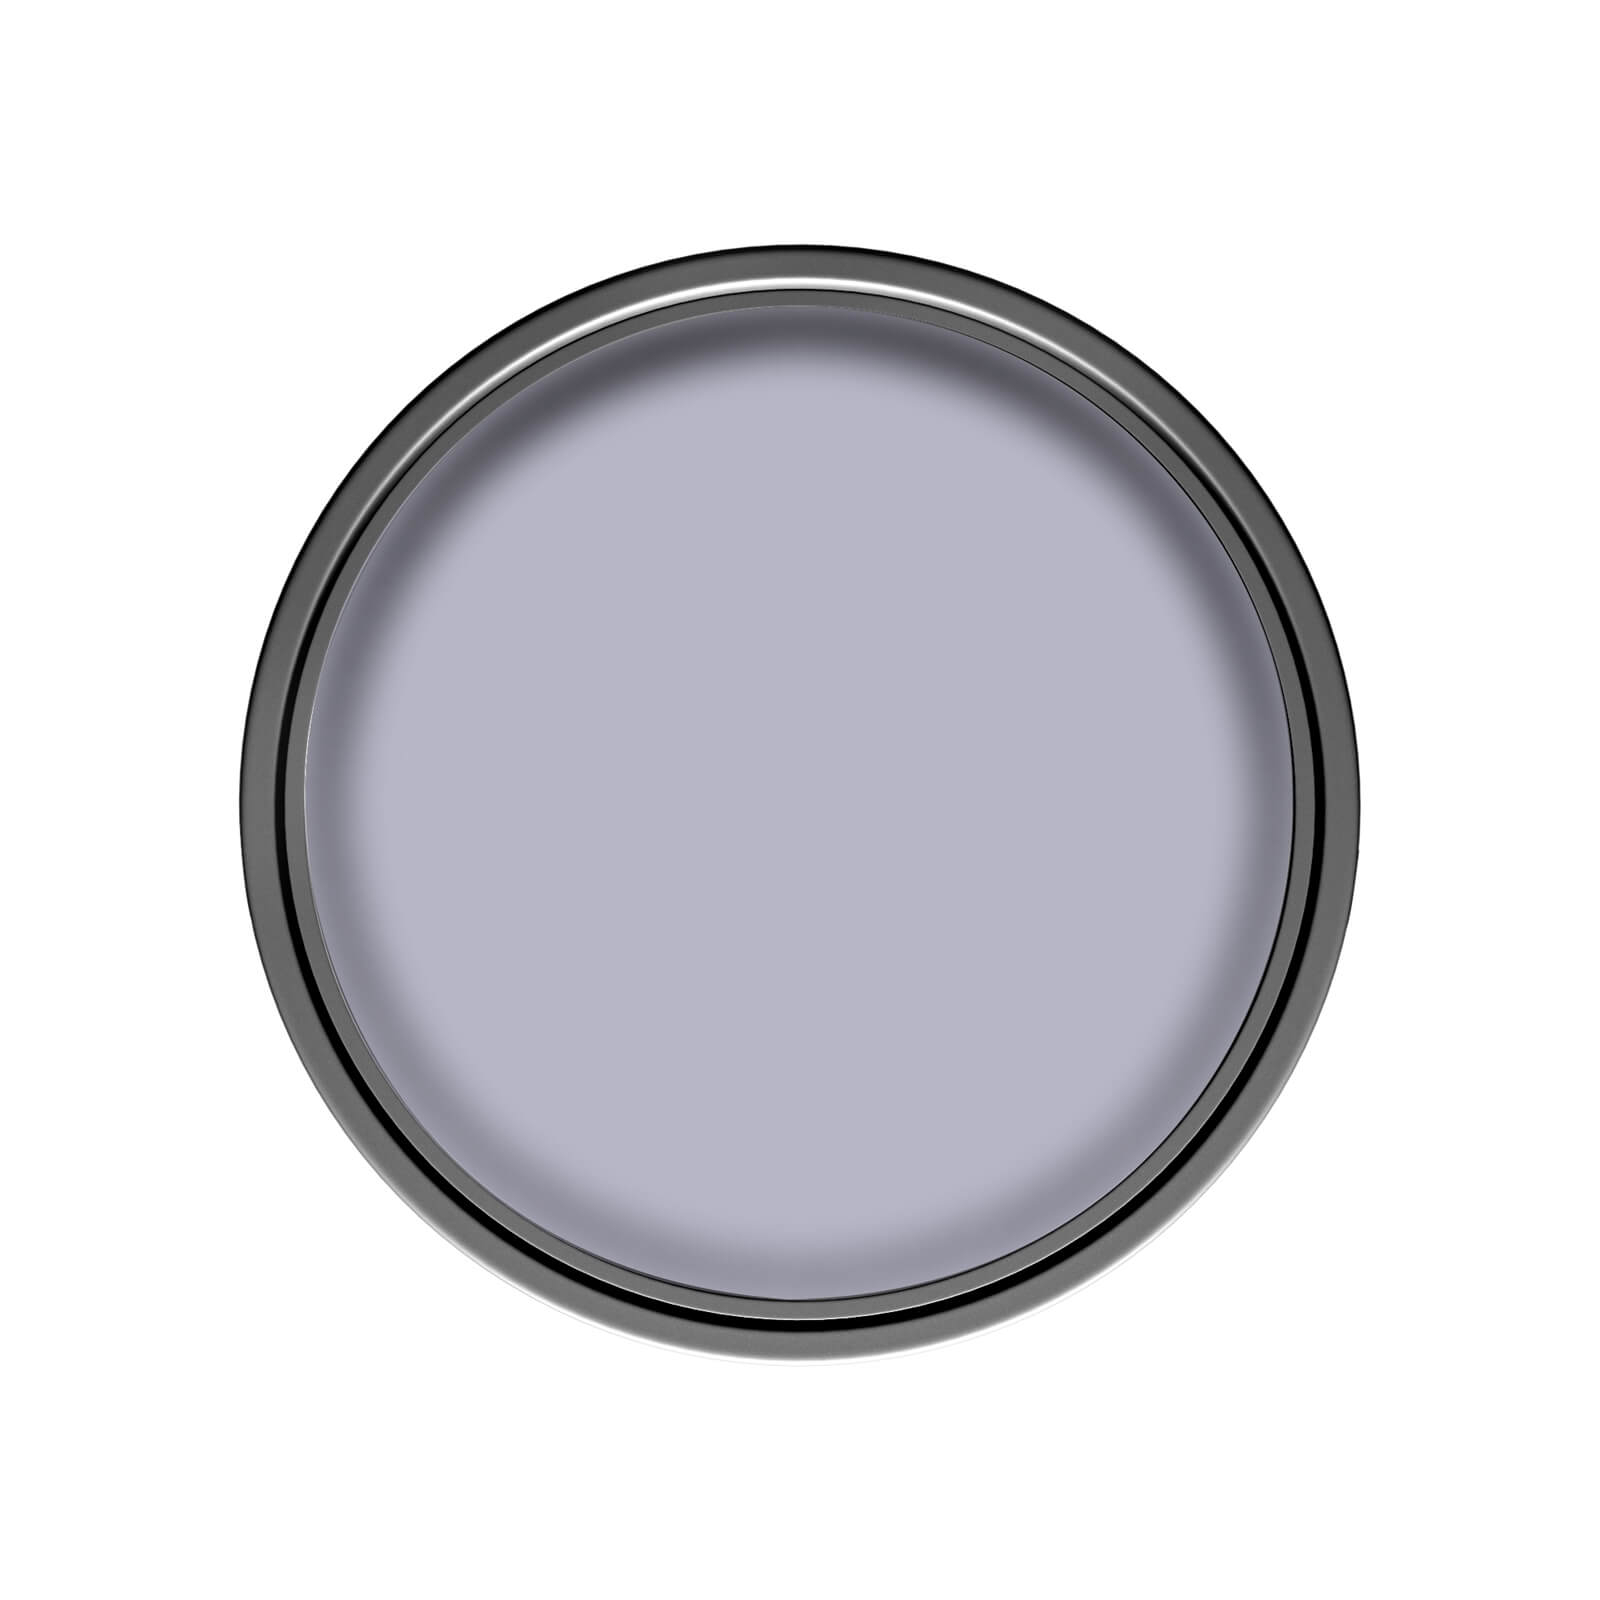 Dulux Silk Emulsion Paint Lavender Quartz - 2.5L